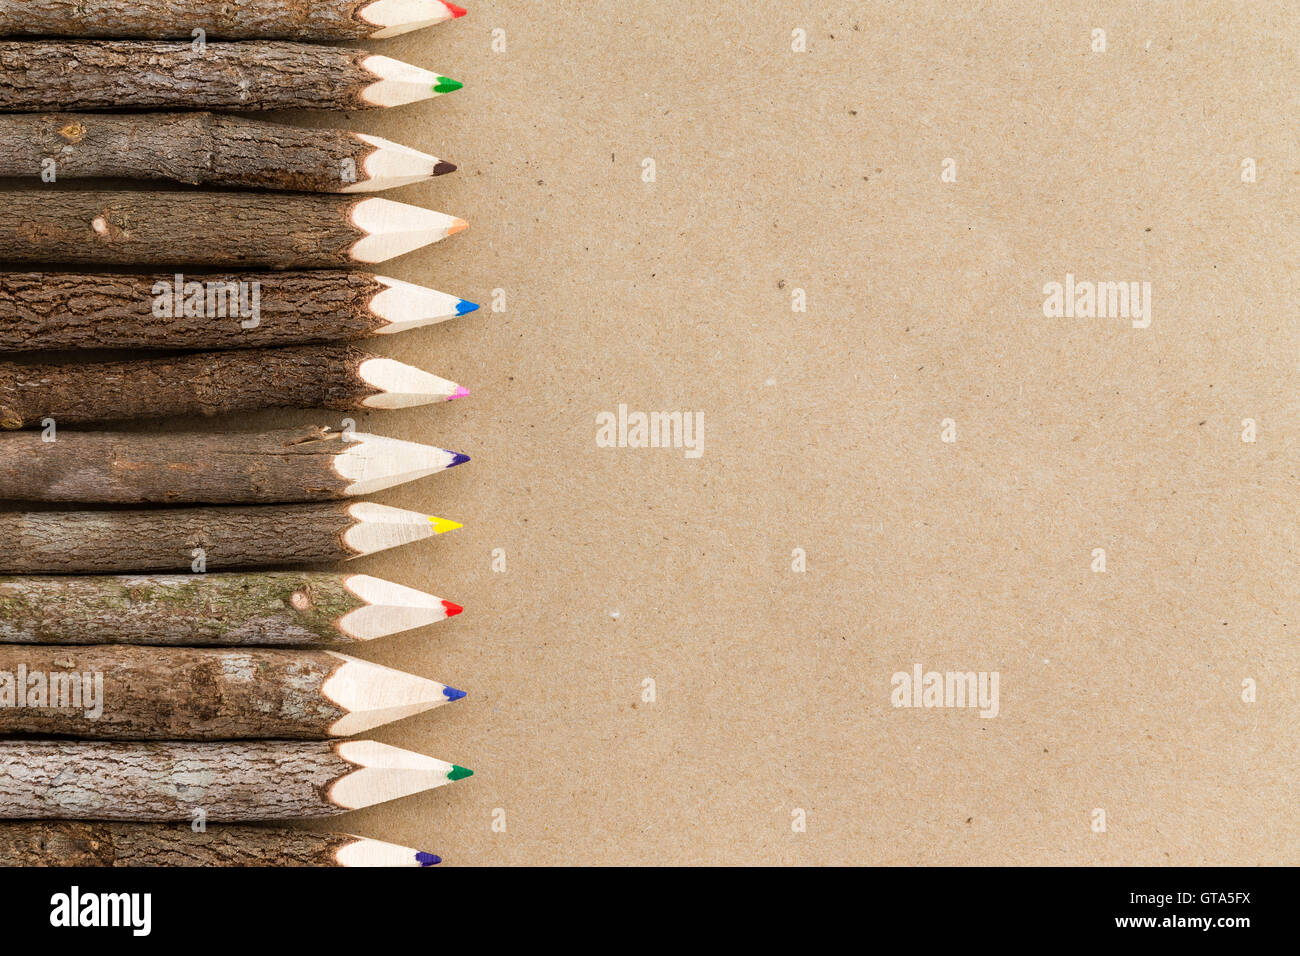 Lápiz lápiz de madera natural rústica con el borde afilado hacia puntos de copia en blanco el espacio de papel marrón Foto de stock